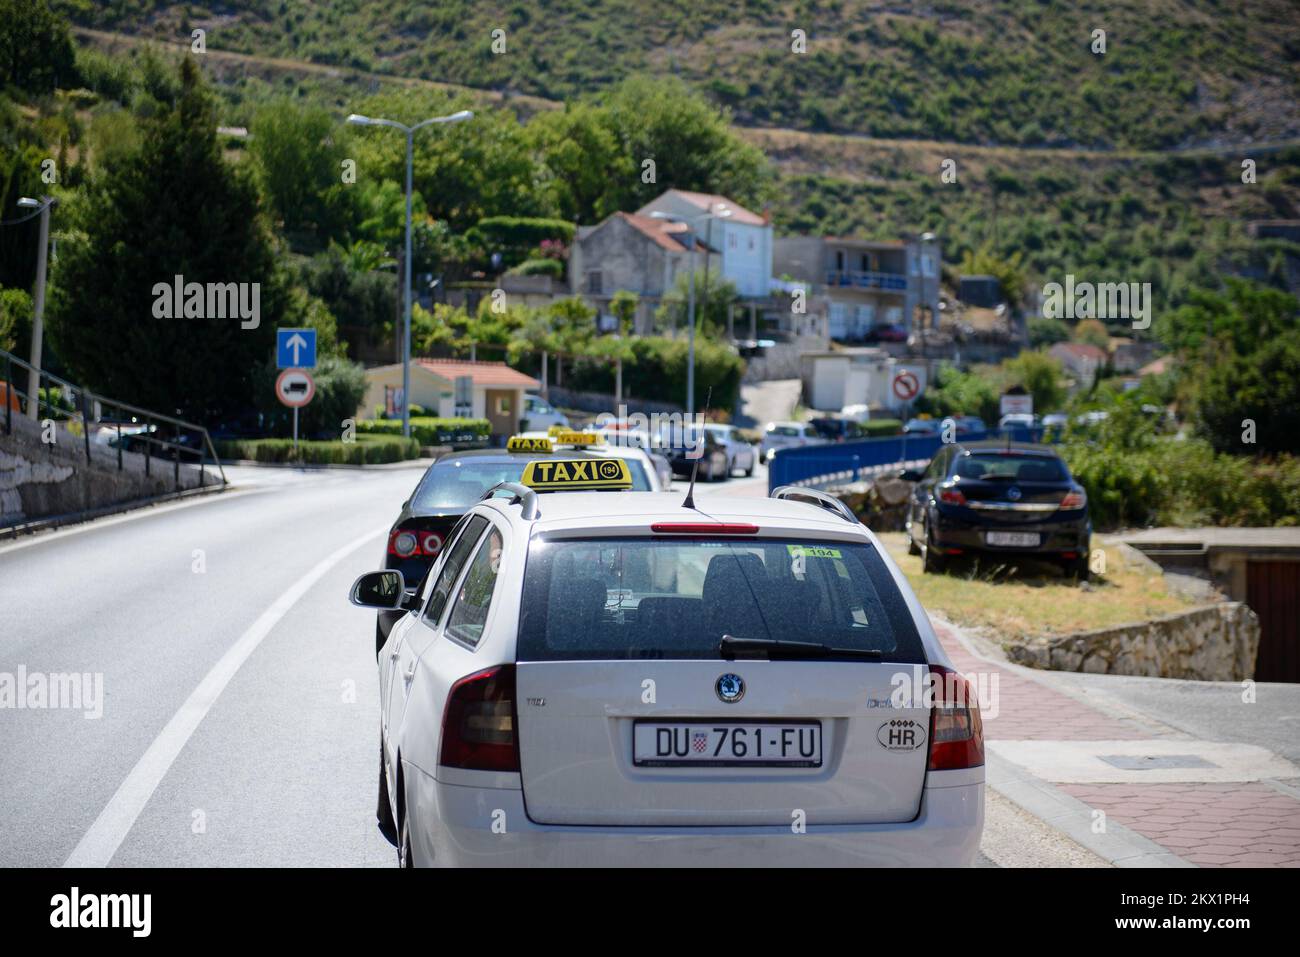 28.07.2017., Dubrovnik - Taxifahrer protestieren gegen Uber. Sie stoppten den Verkehr und betonten, dass spontane Zusammenkünfte als marsch gegen das schlechte Rechtssystem der Republik Kroatien beschlossen wurden, die nicht auf ihrer Seite ist, um ihre Rechte zu schützen. Foto: Grgo Jelavic/PIXSELL Stockfoto